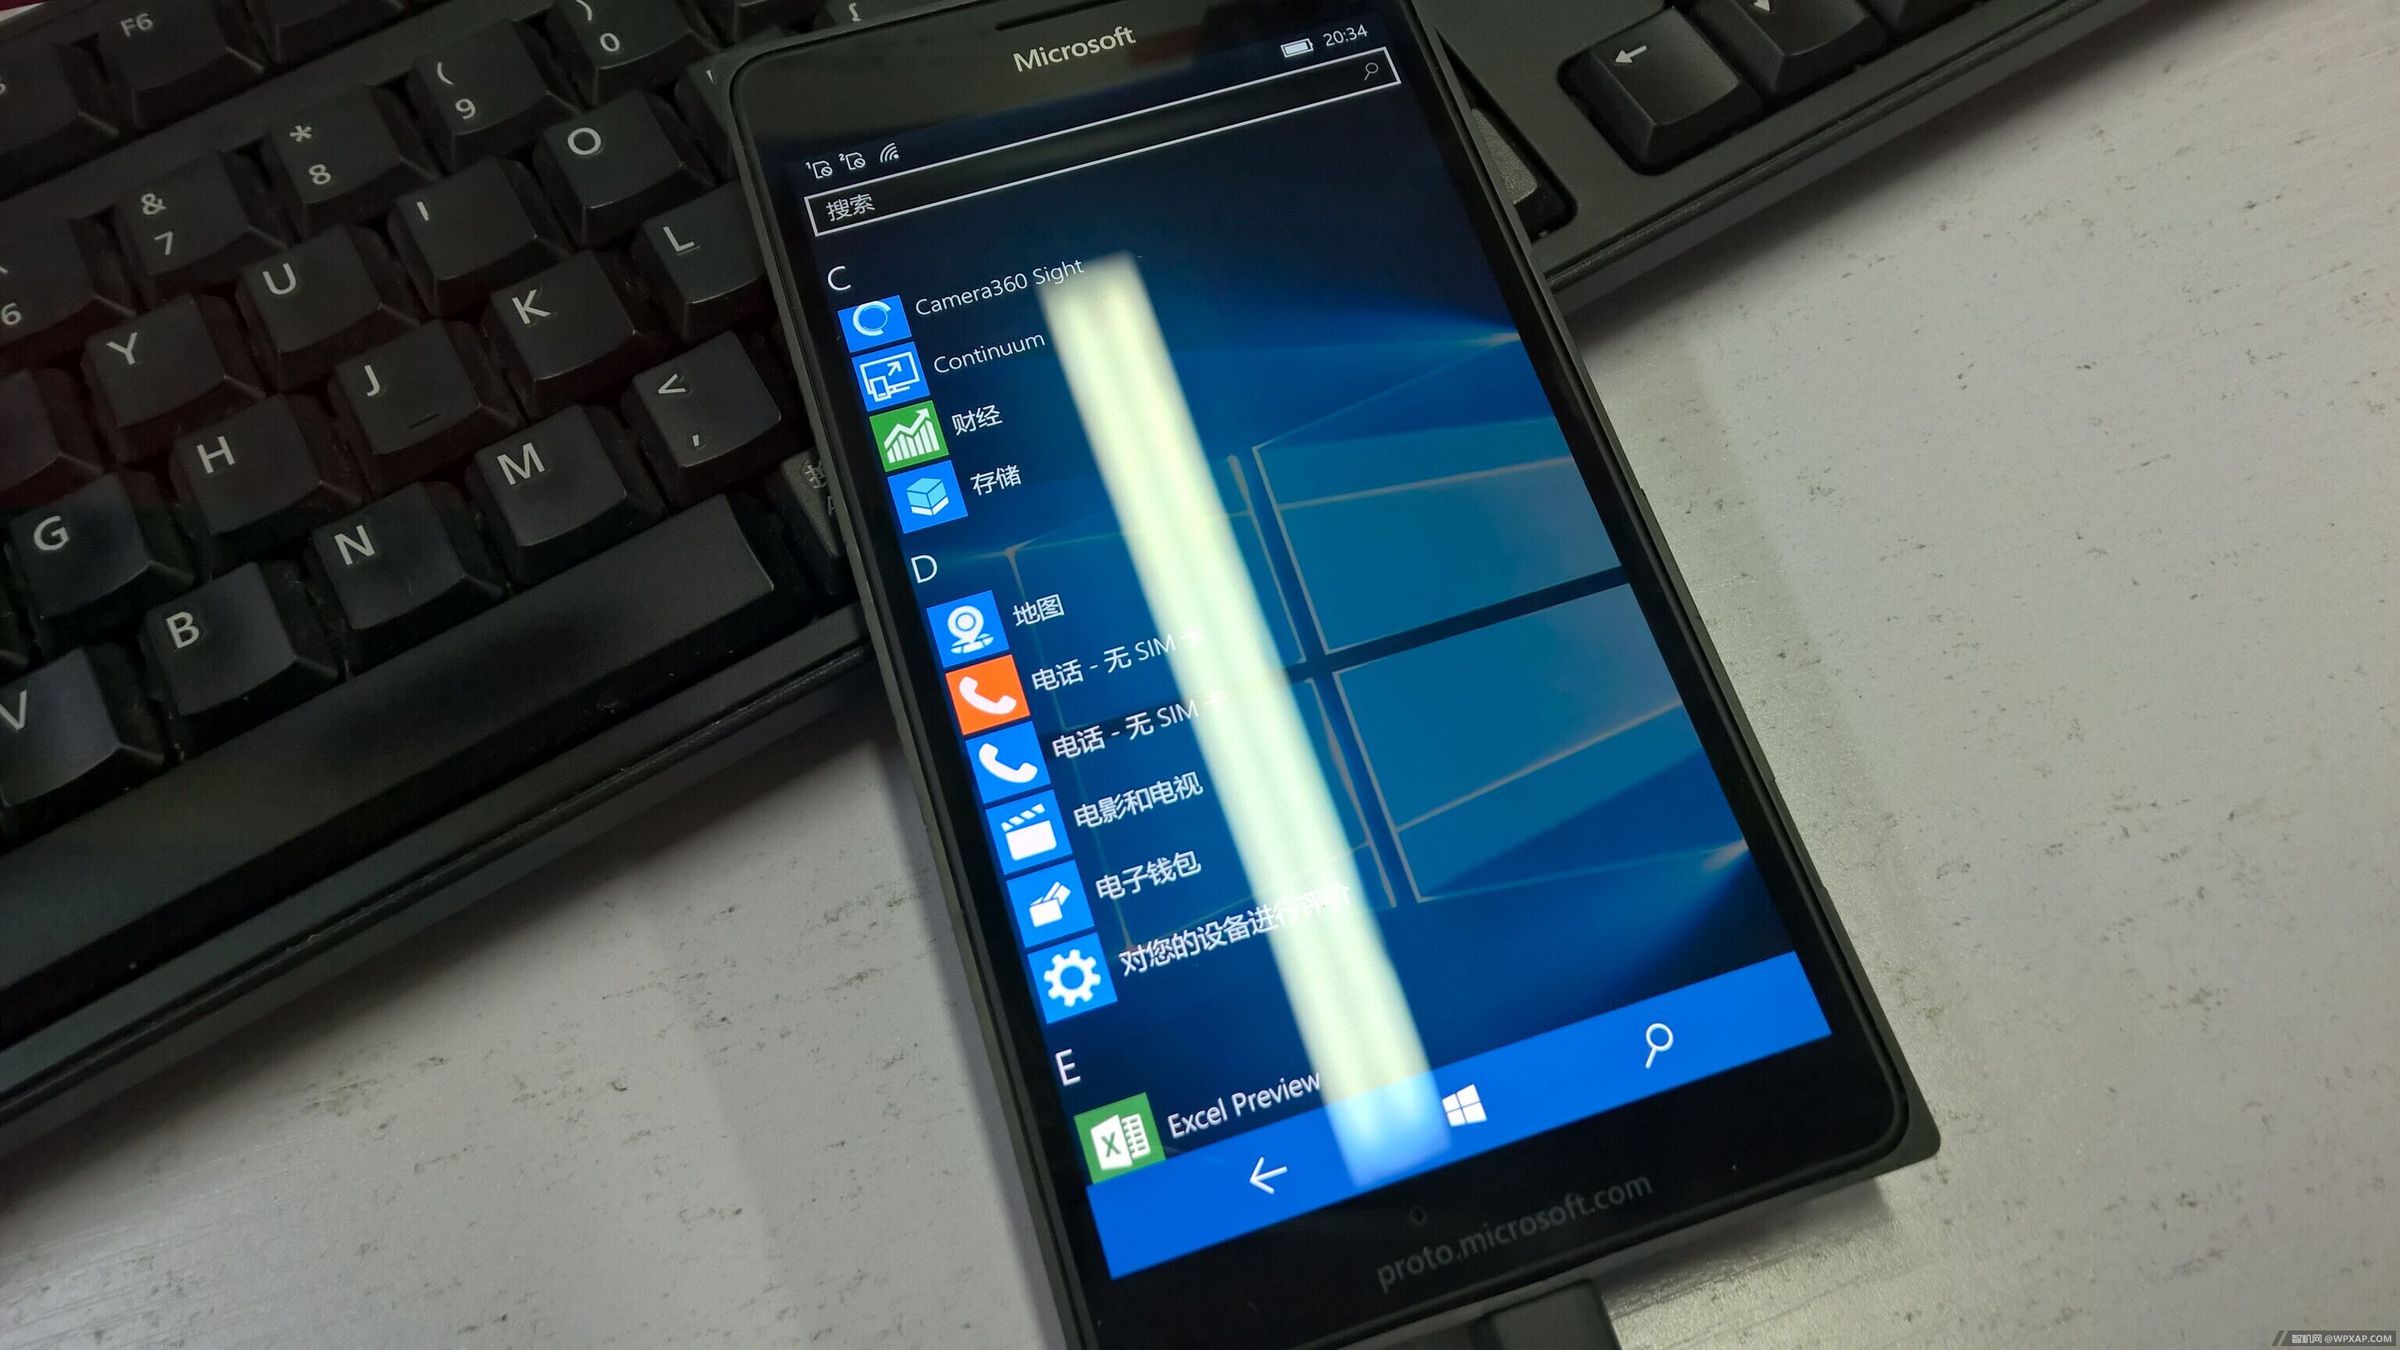 Lumia 950 XL prototype images